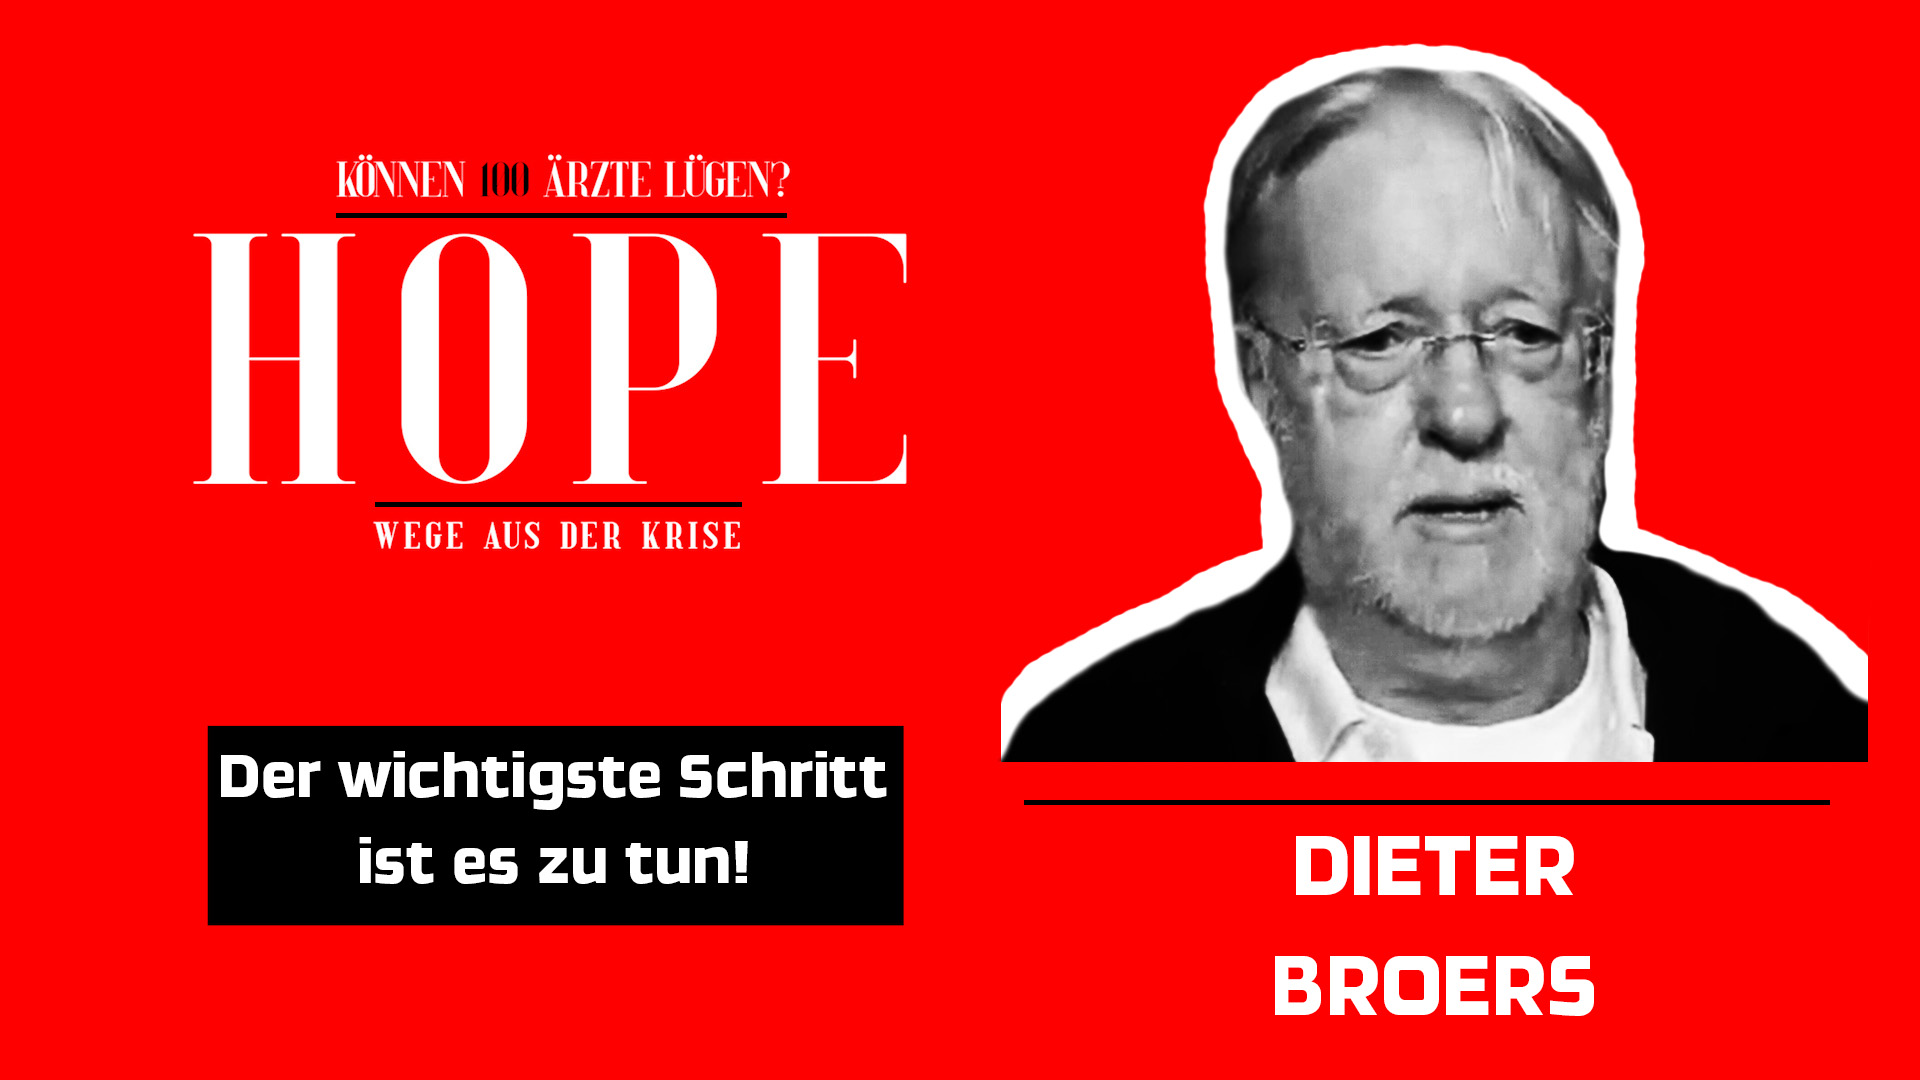 Dieter Broers